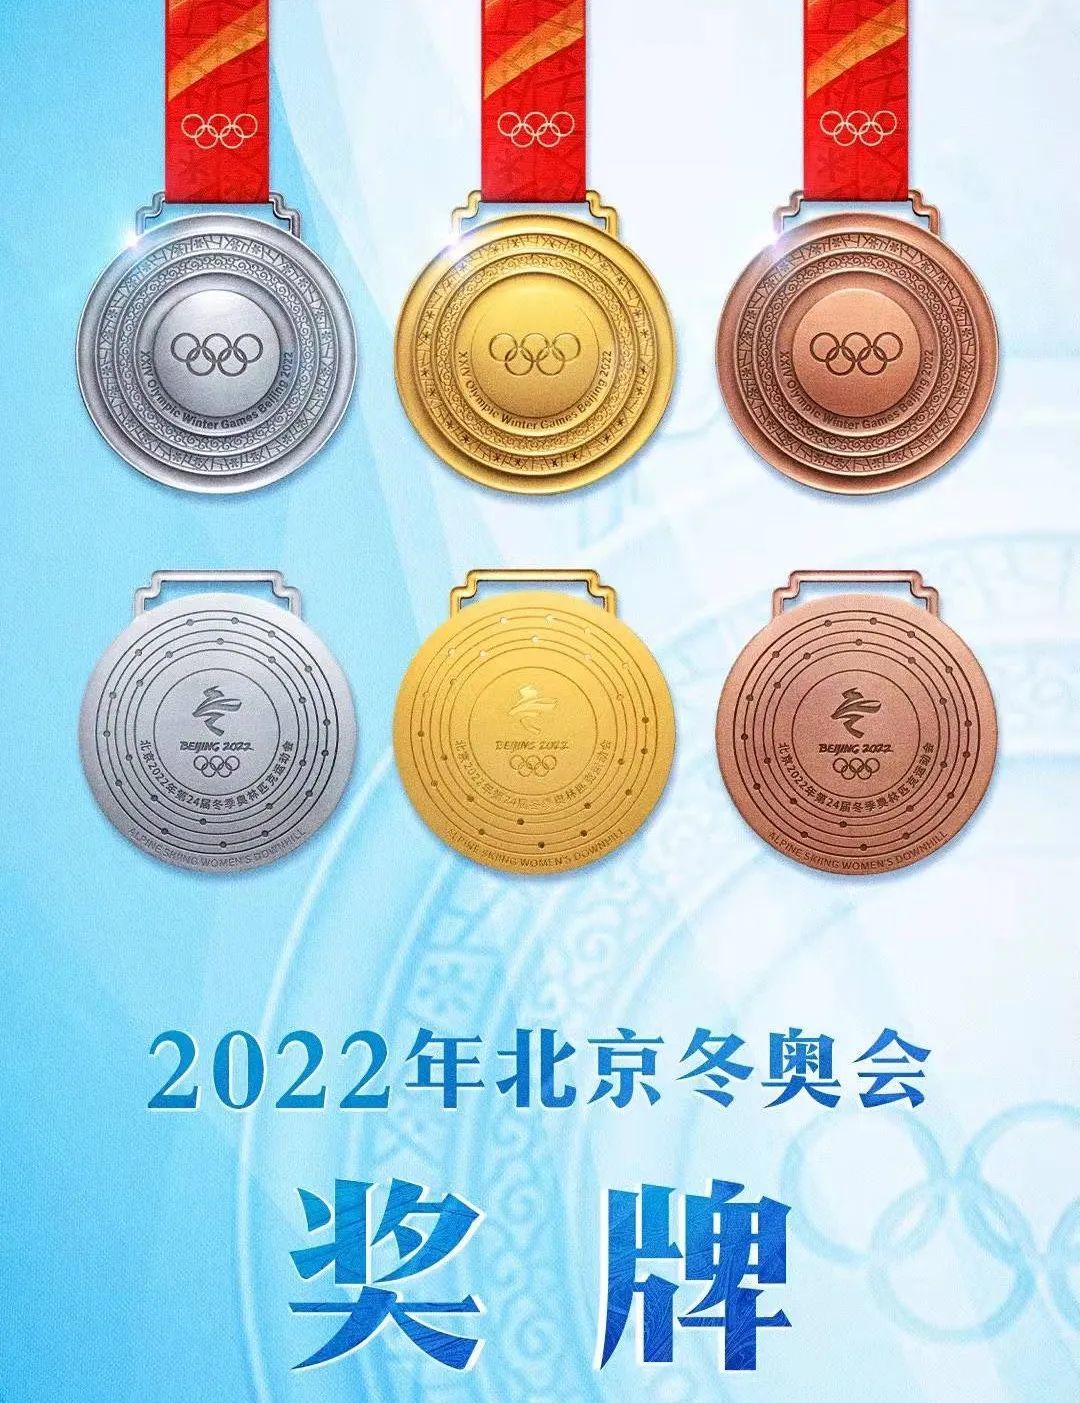 北京东奥会奖牌榜图片